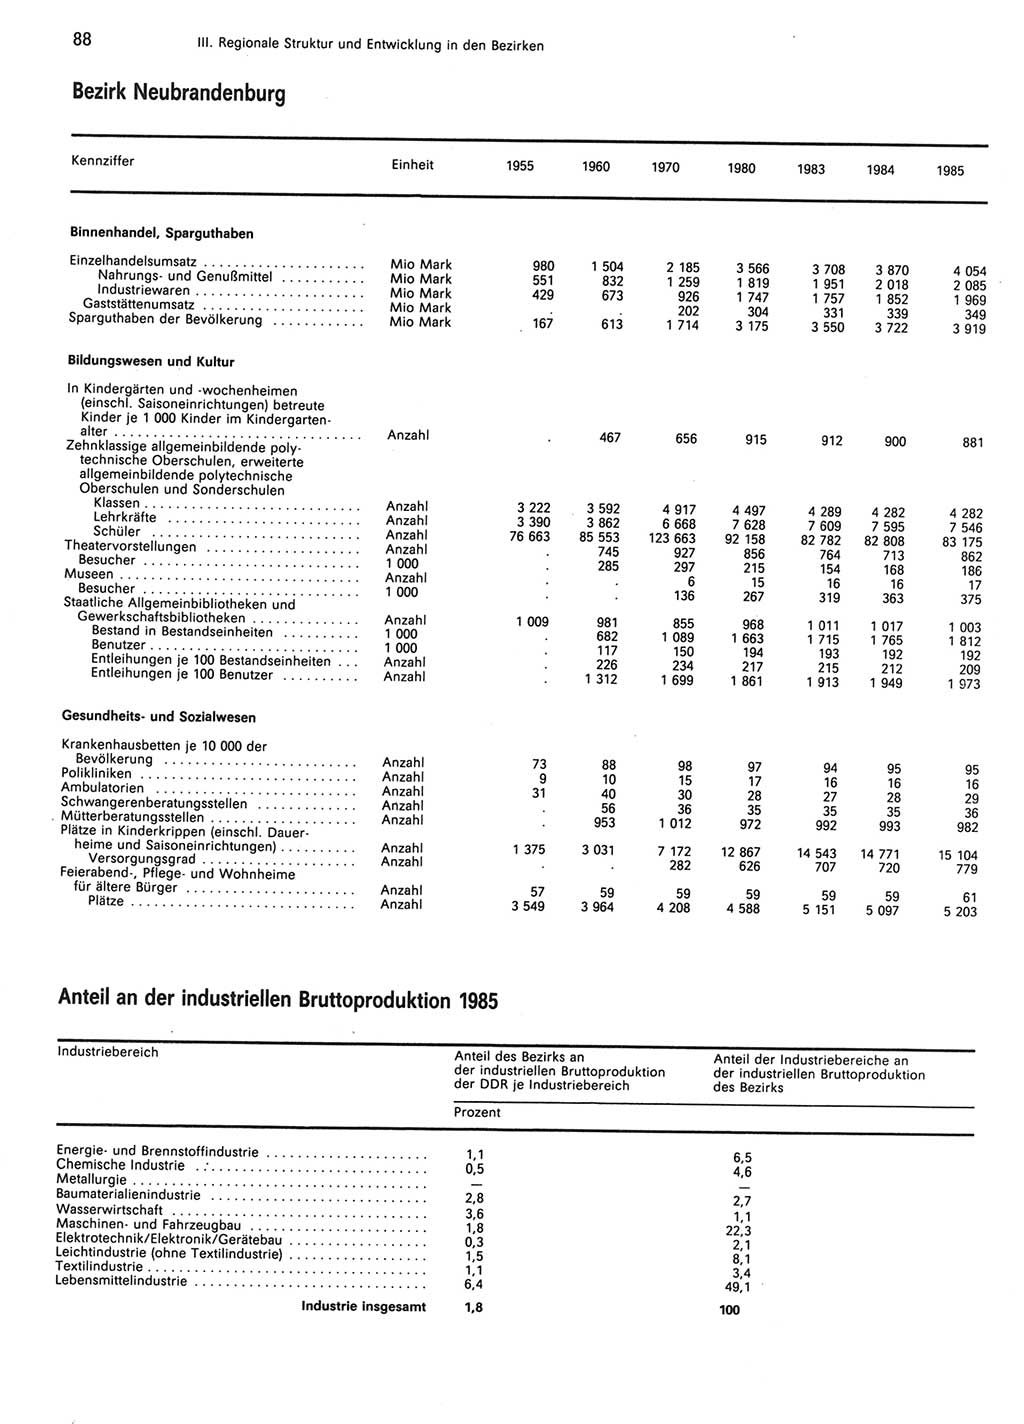 Statistisches Jahrbuch der Deutschen Demokratischen Republik (DDR) 1986, Seite 88 (Stat. Jb. DDR 1986, S. 88)